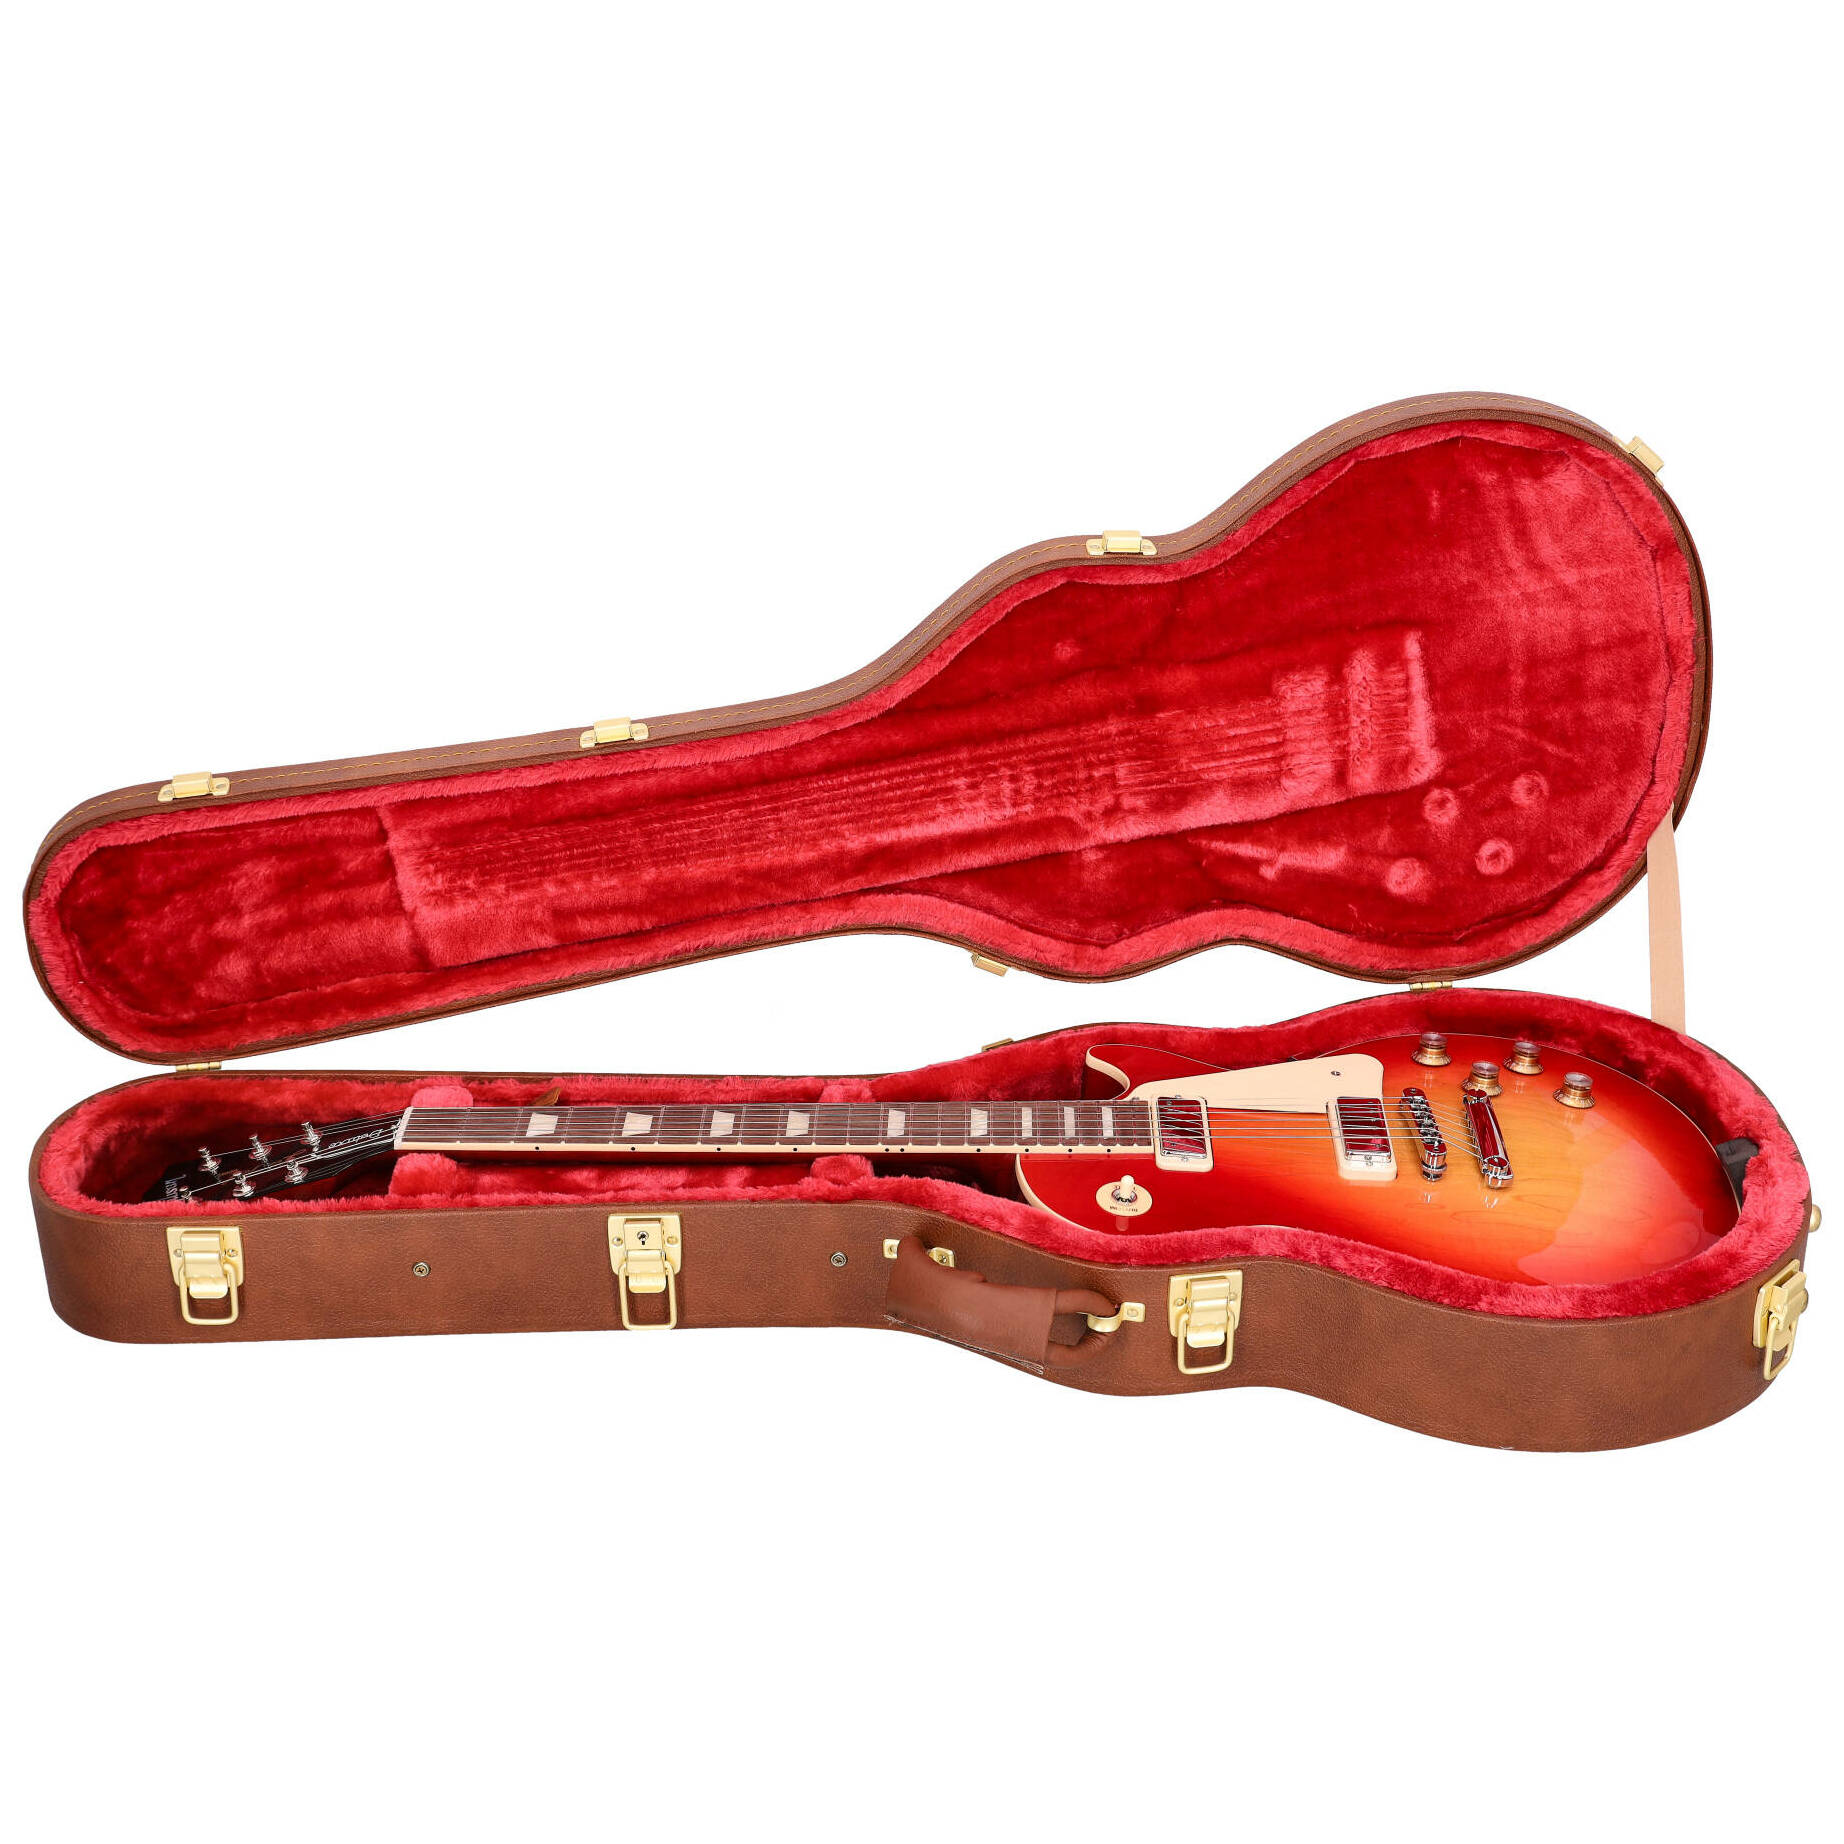 Gibson Les Paul Deluxe 70s Cherry Sunburst 14